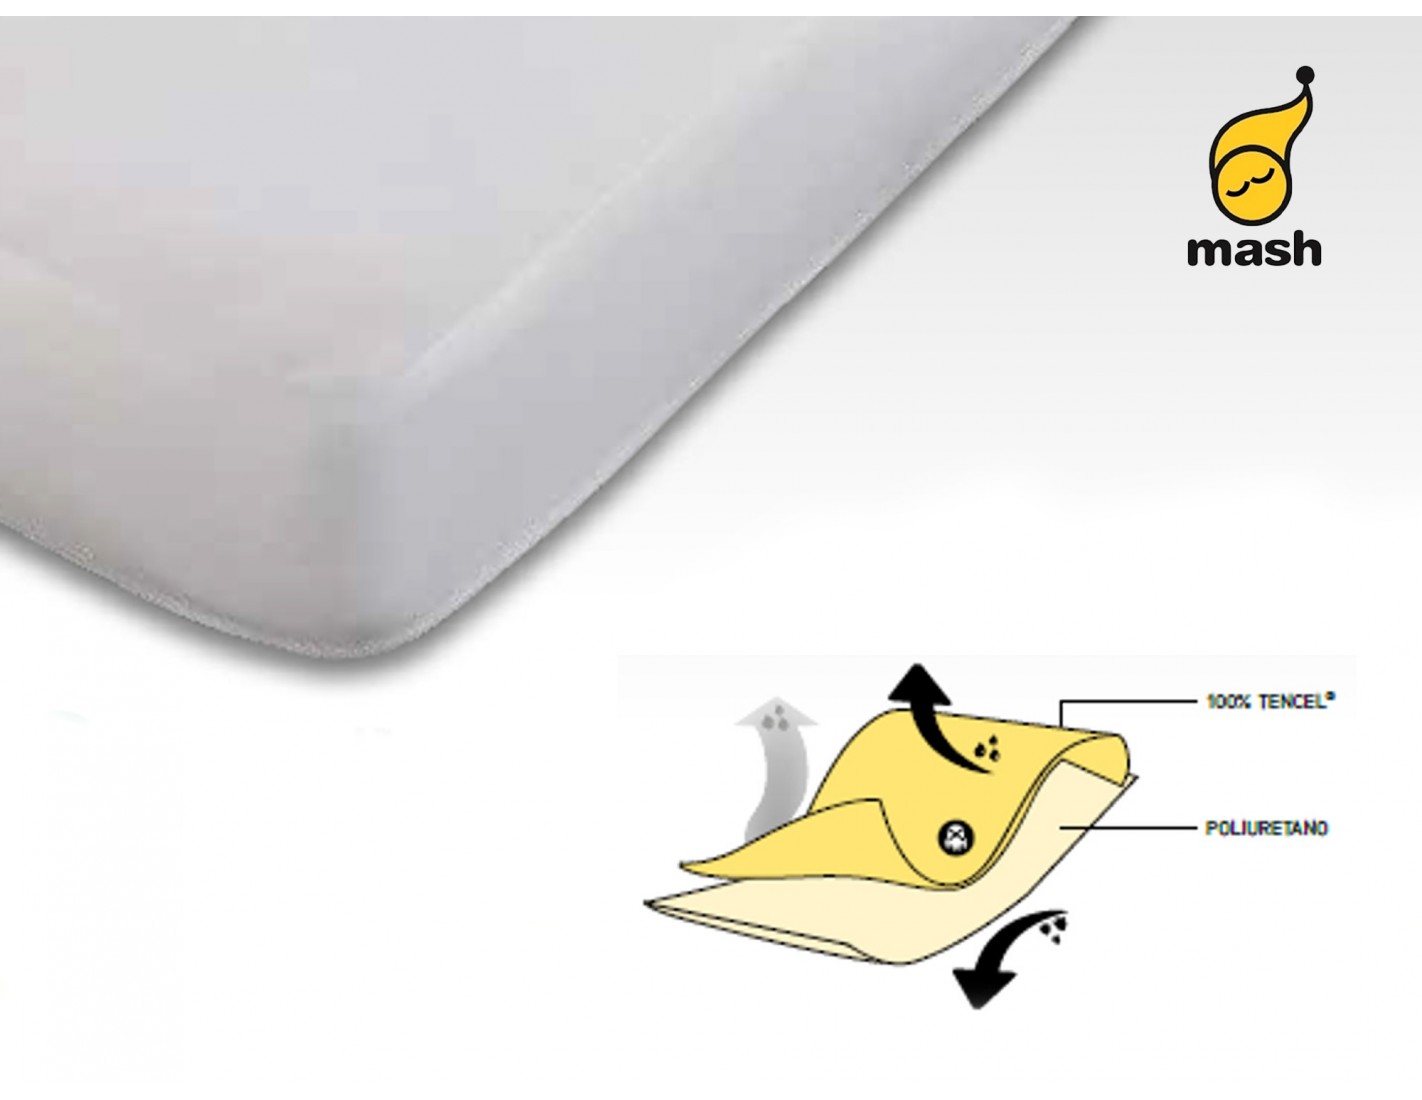 Protector de colchón Tencel impermeable e hípertranspirable